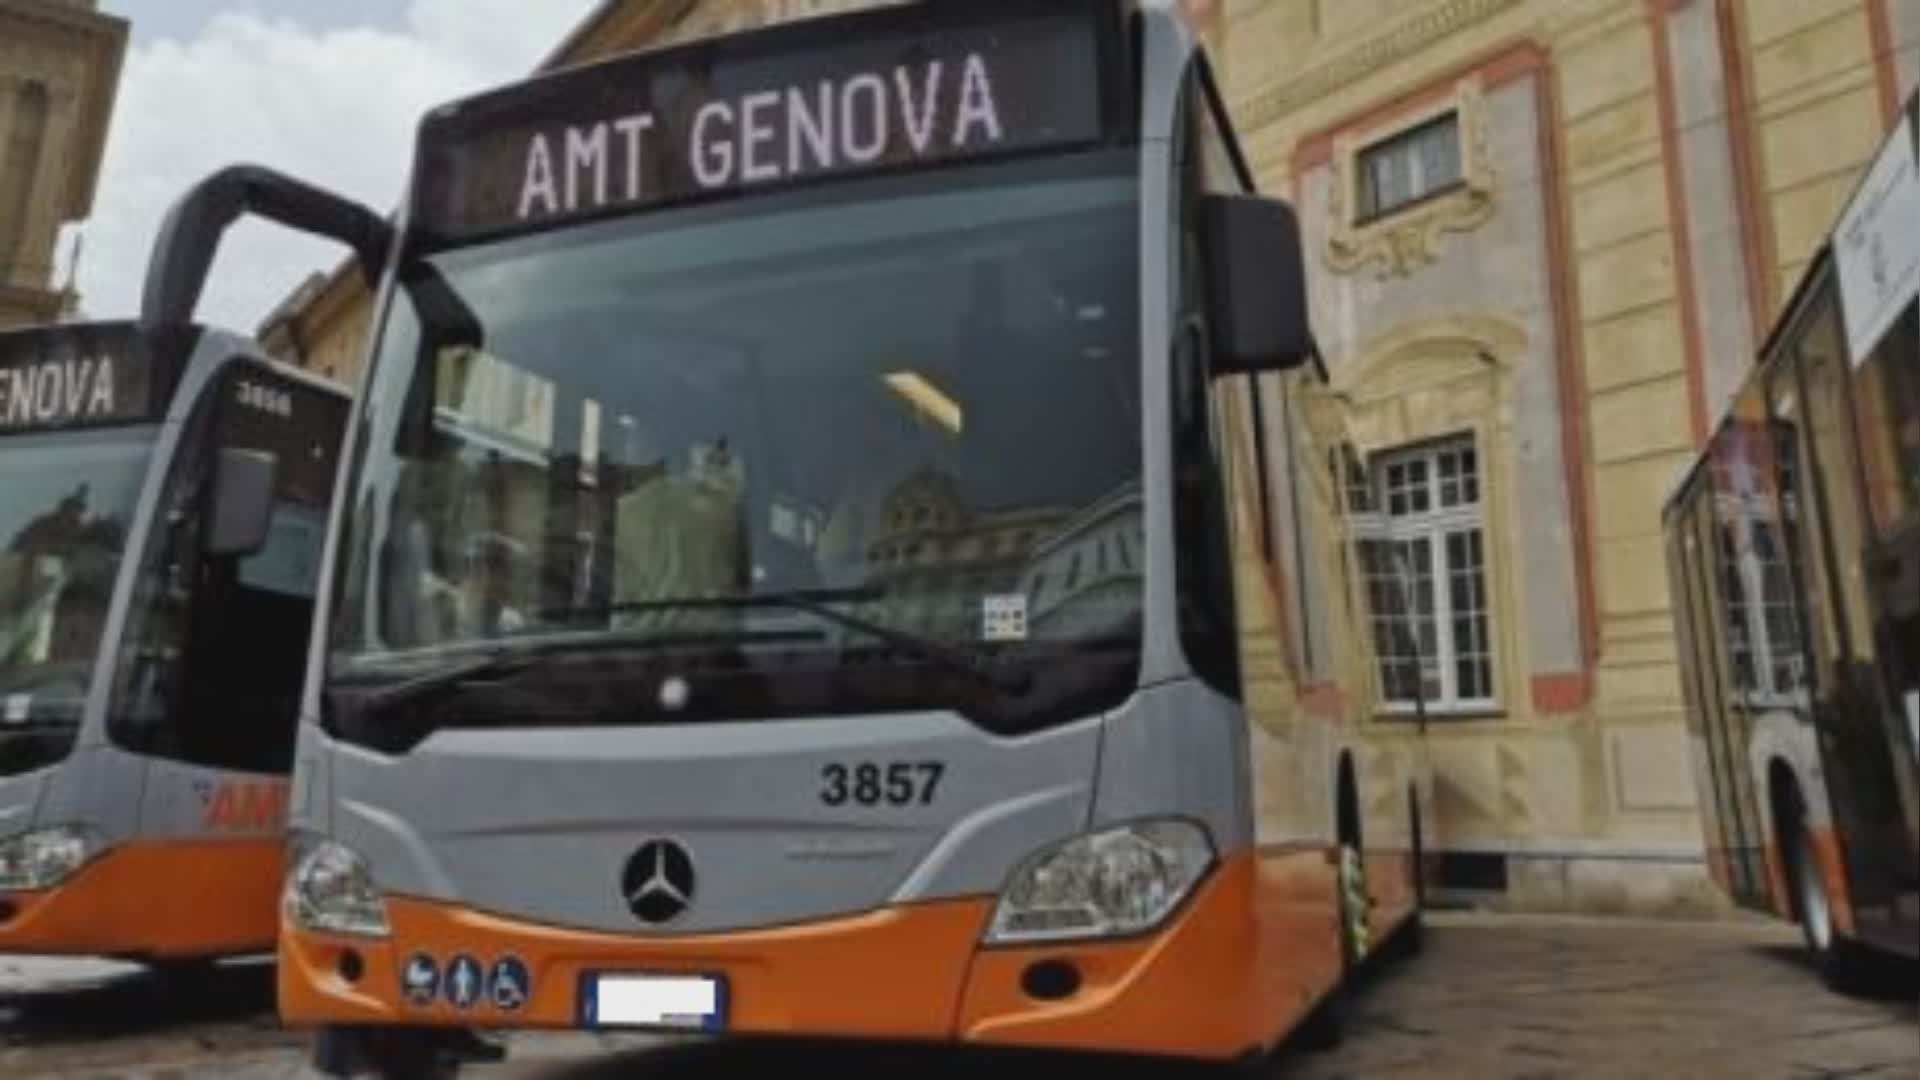 Genova, oggi sciopero di autobus e metro: ecco modalità e orari